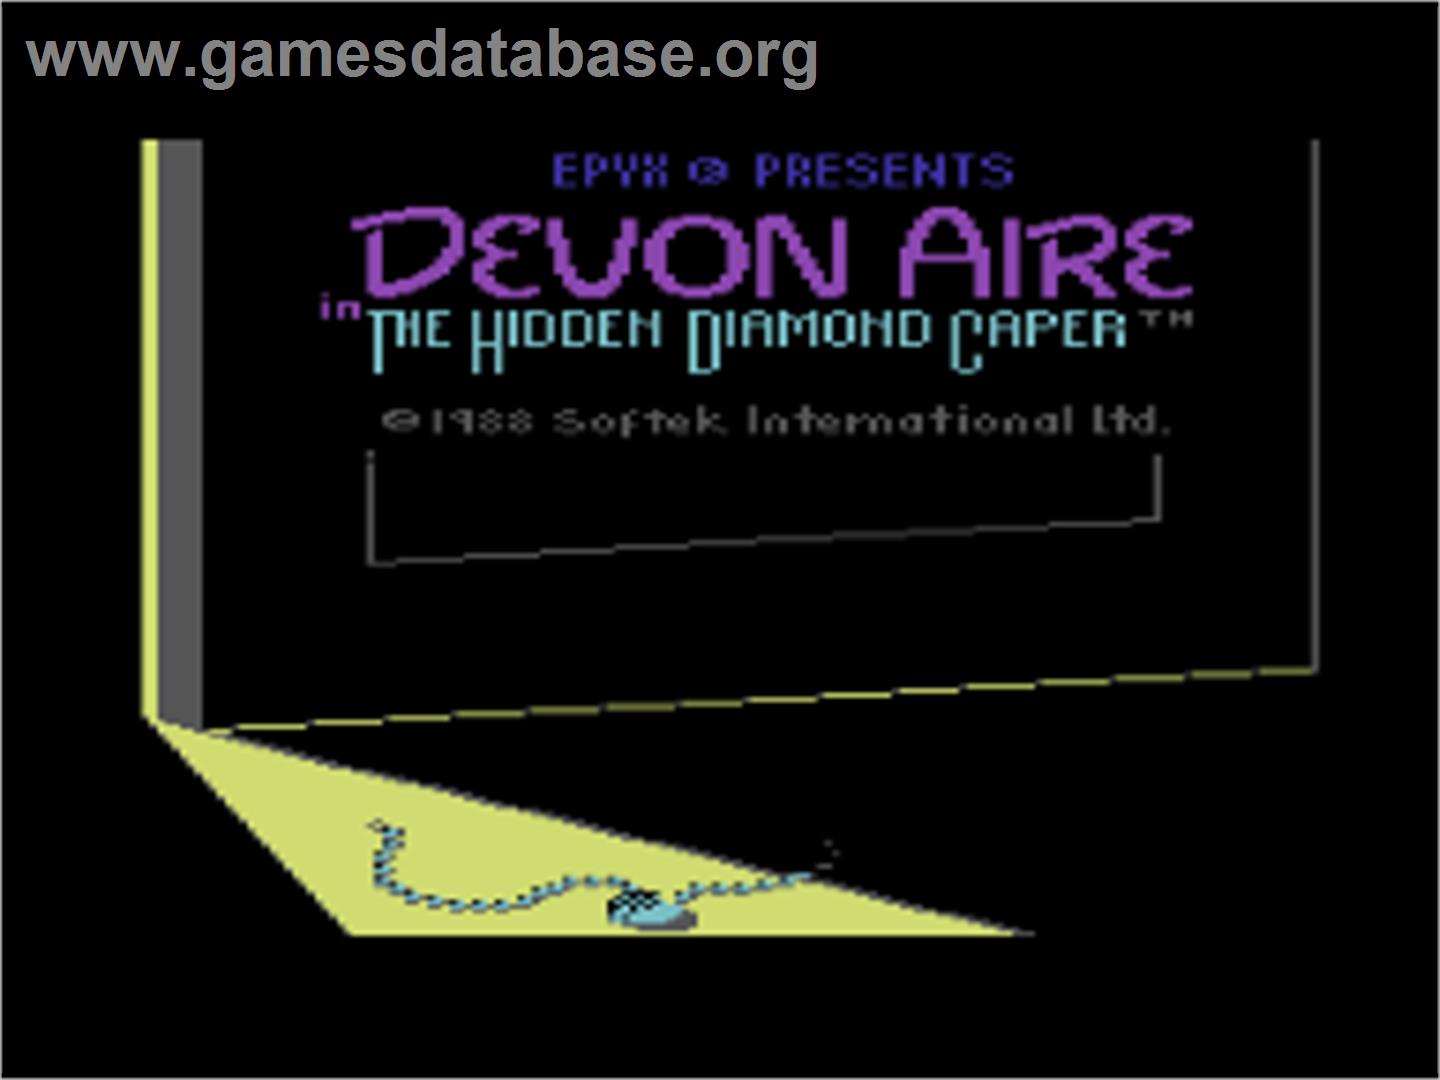 Devon Aire in the Hidden Diamond Caper - Commodore 64 - Artwork - Title Screen